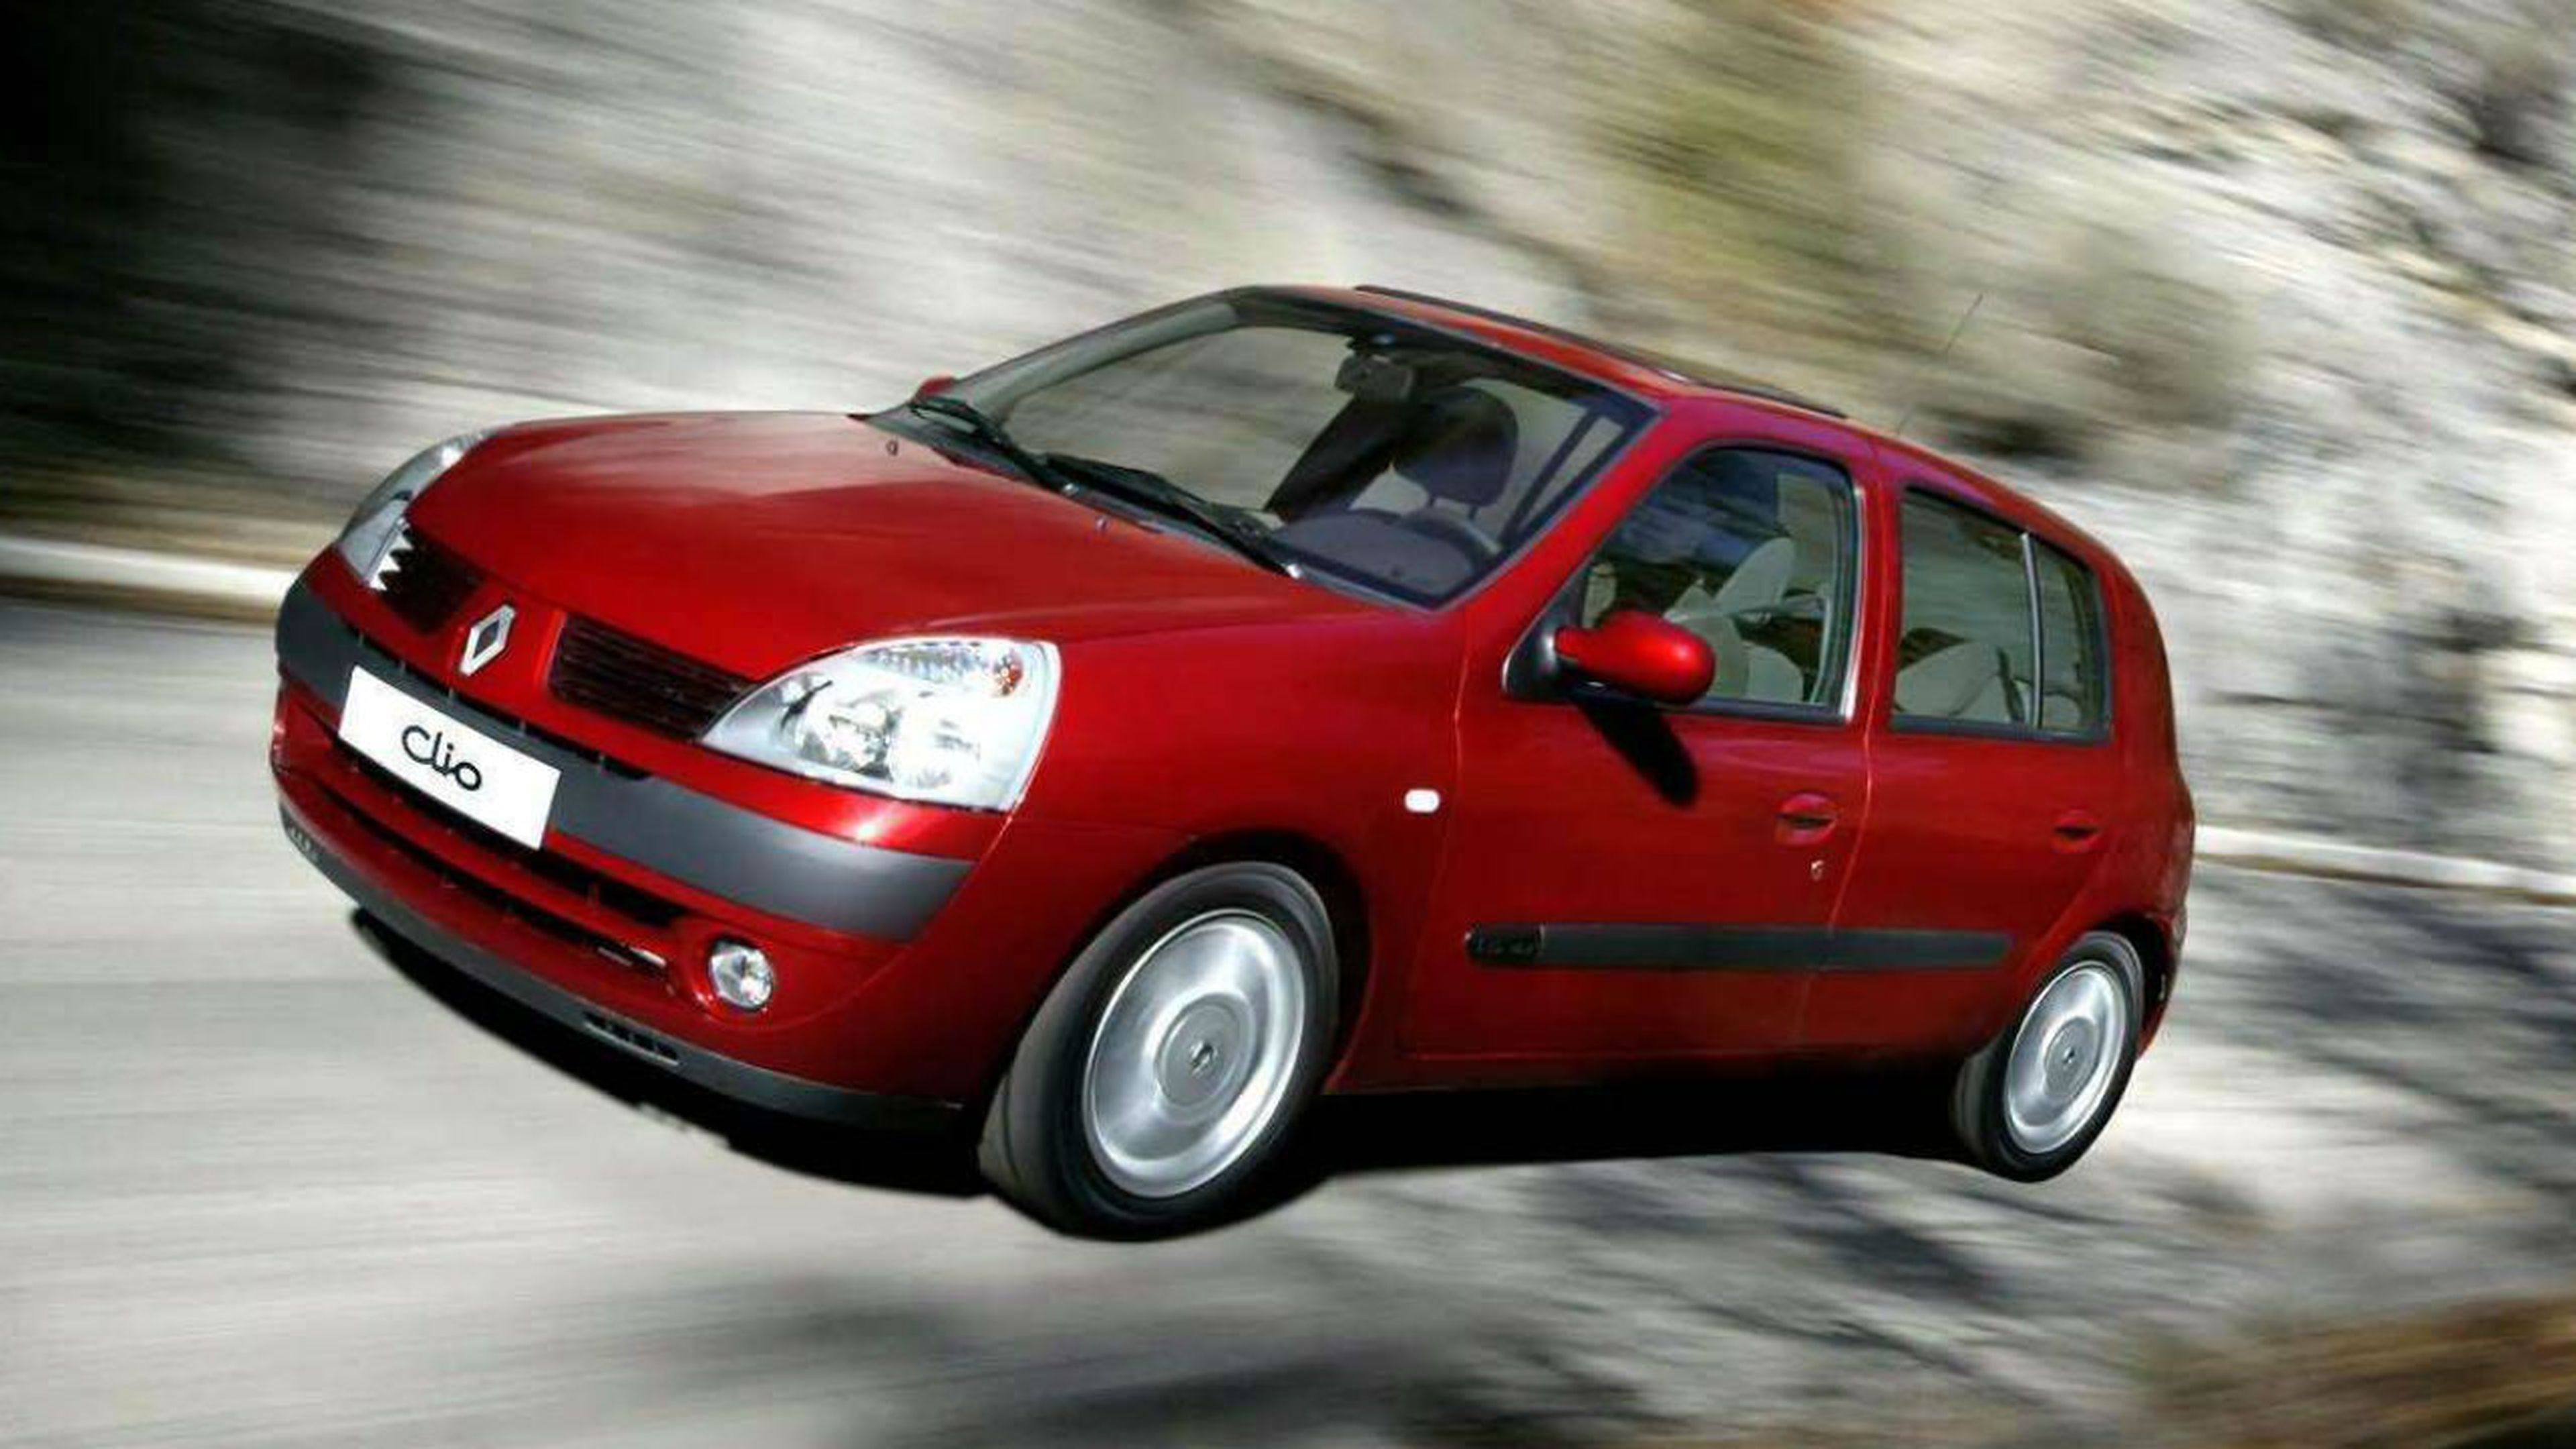 Aún se pueden ver en circulación muchas unidades de la tercera generación del Renault Clio.